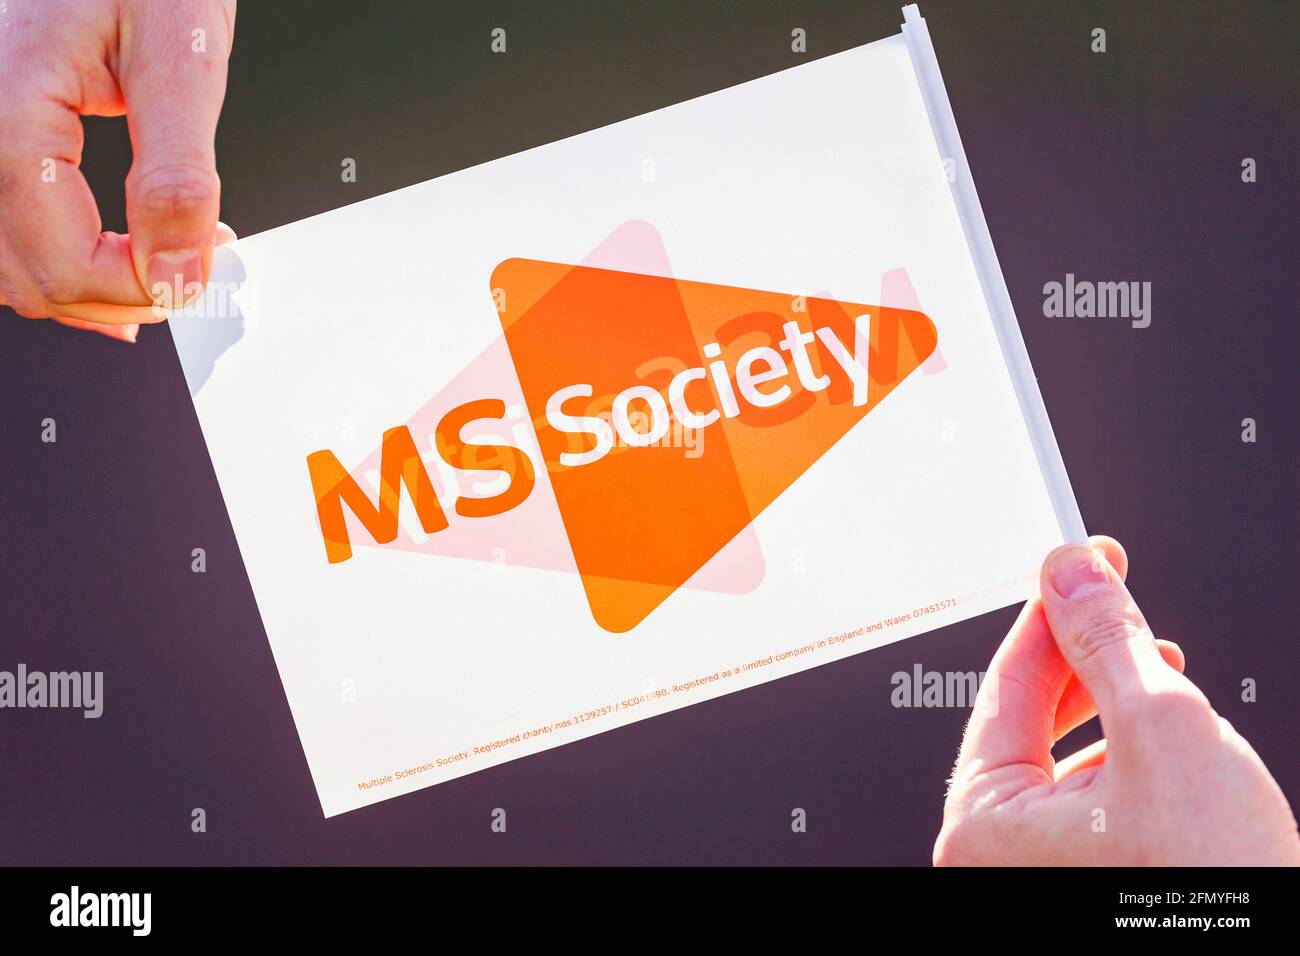 MS Society, images de collecte de fonds Banque D'Images